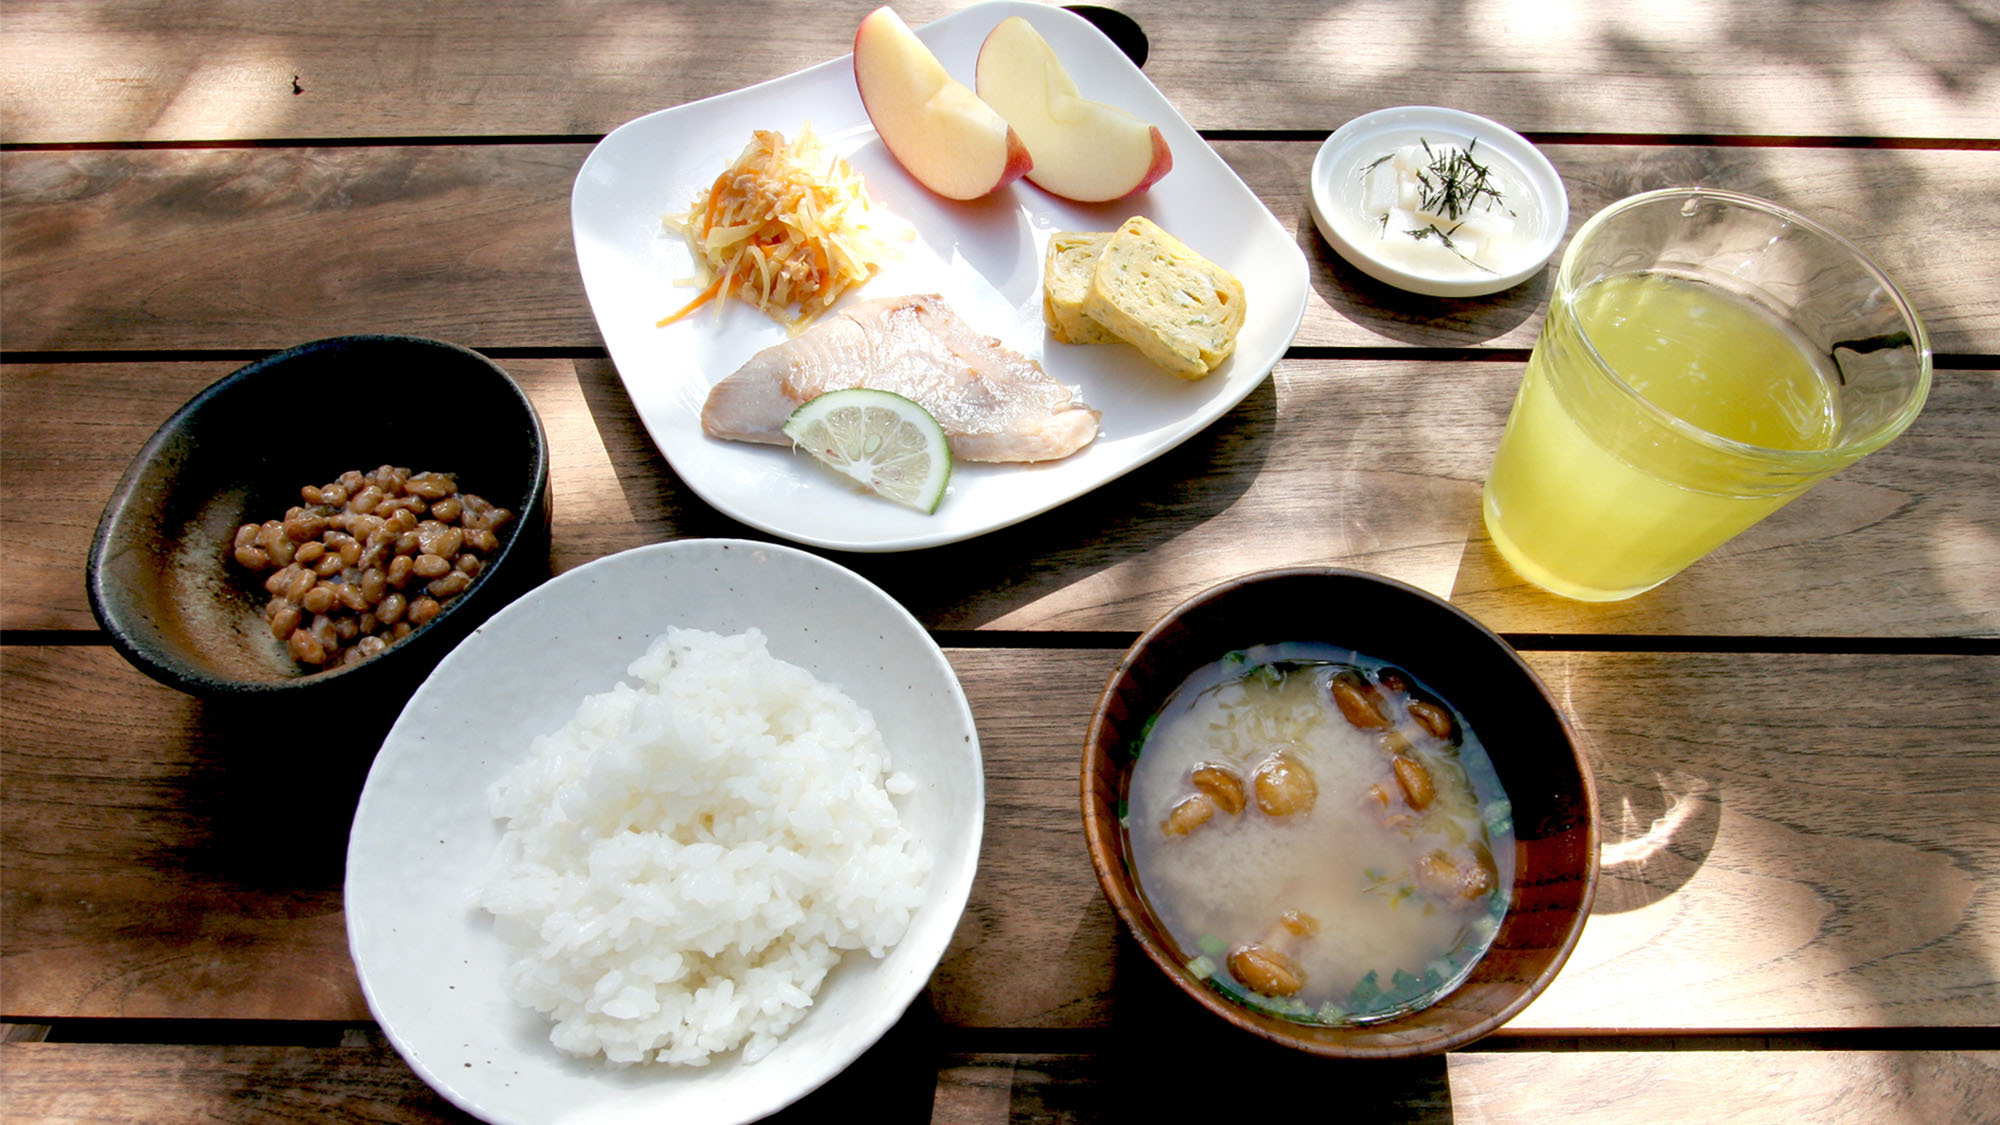 ・【選べる朝食一例】魚を中心とした和食